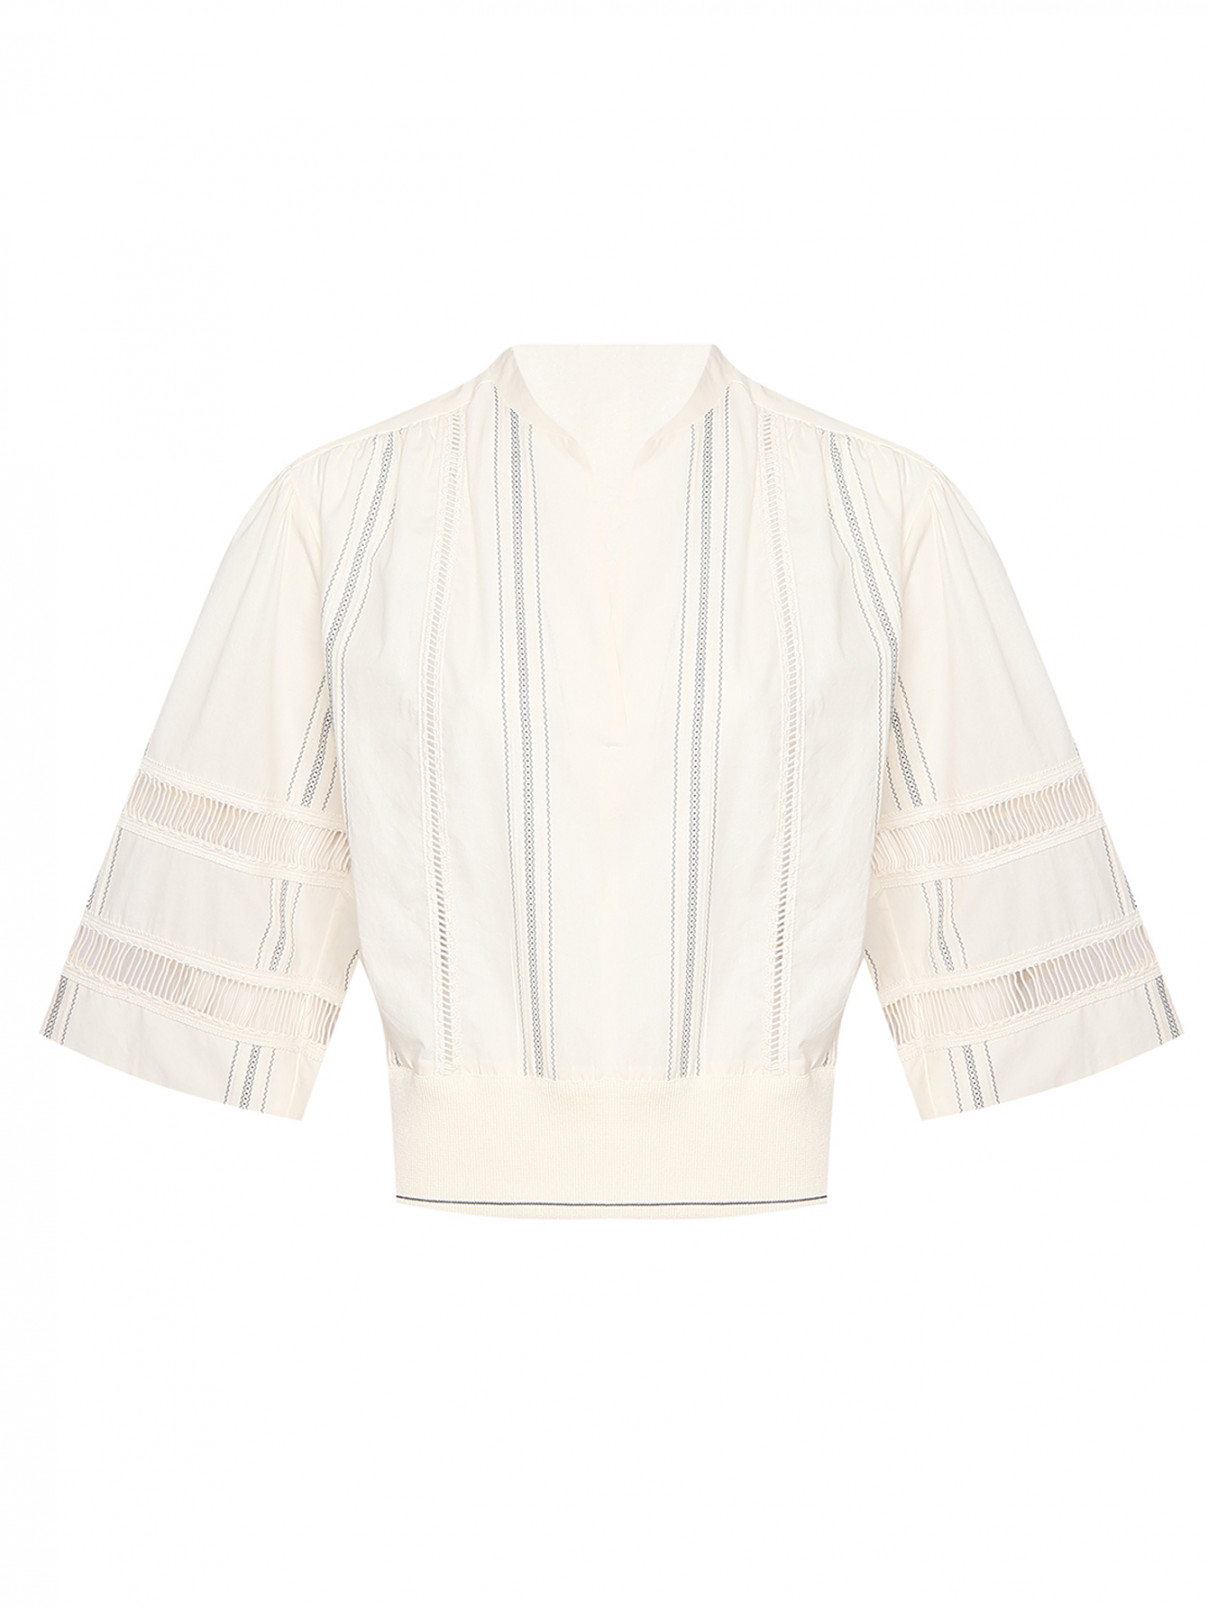 Хлопковая блуза с вышивкой Lorena Antoniazzi  –  Общий вид  – Цвет:  Белый